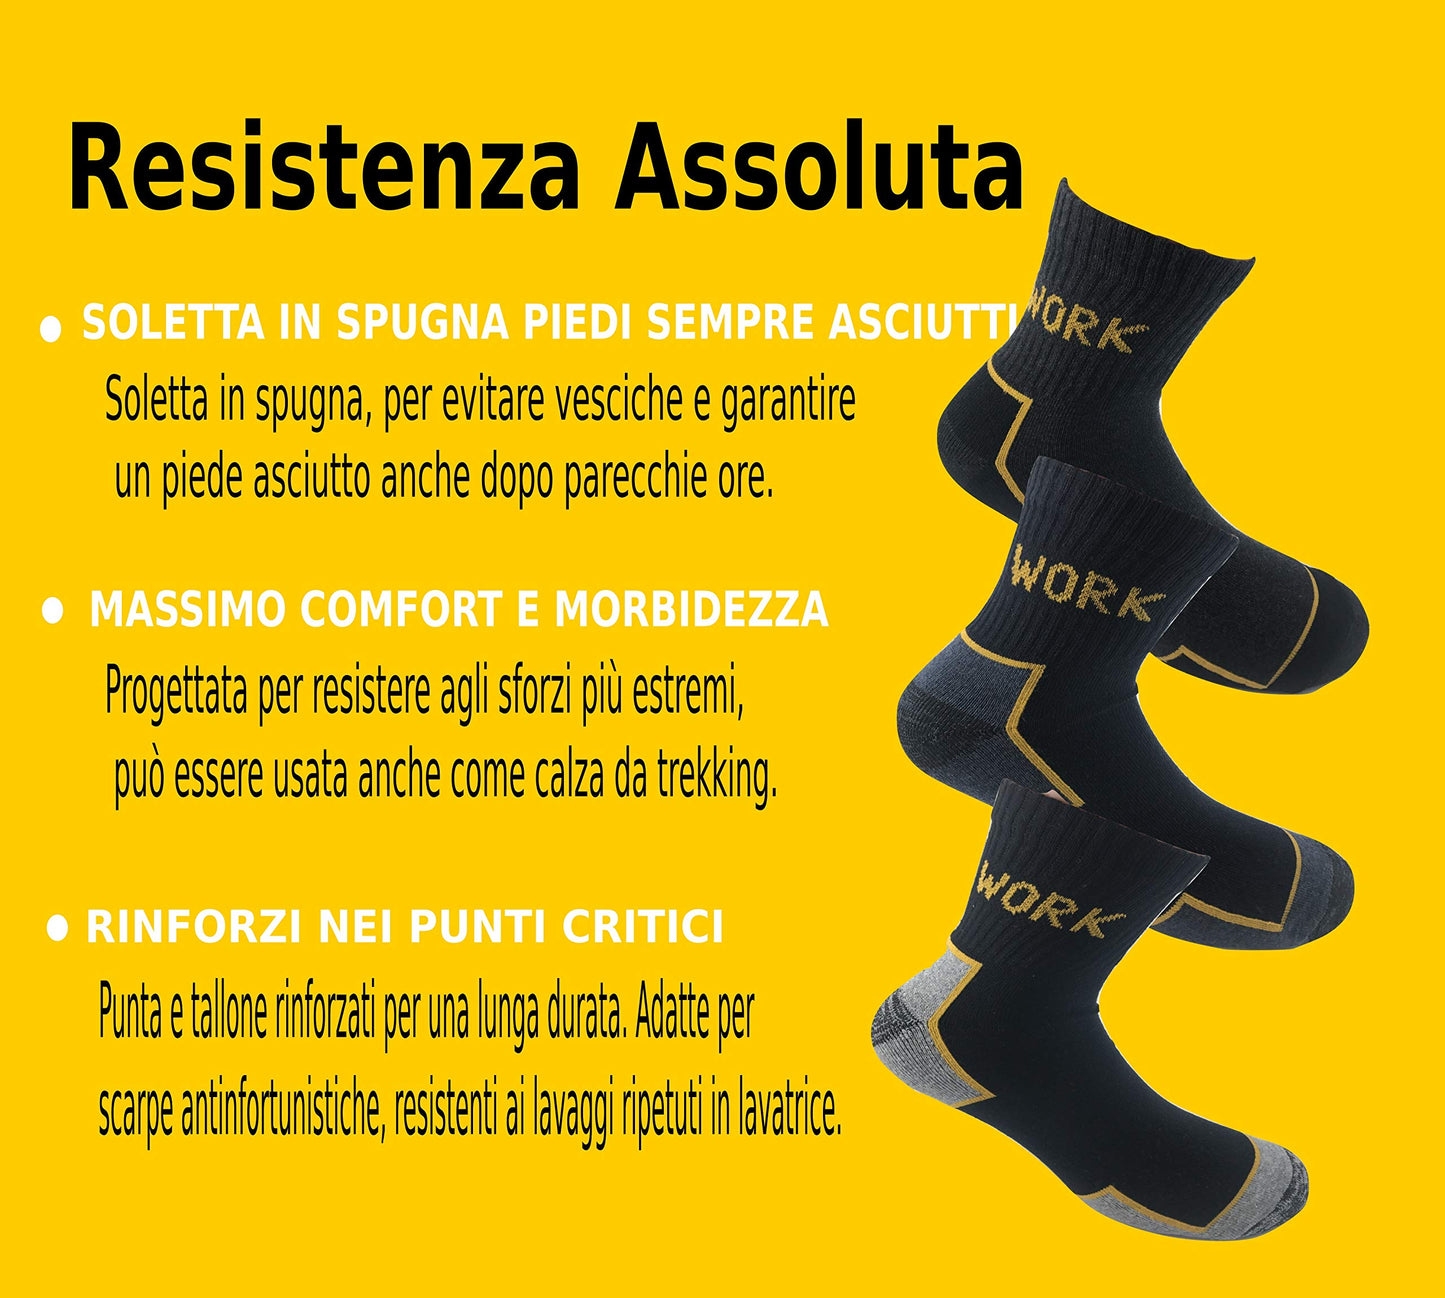 Lucchetti Socks Milano Calze da Lavoro Altezza Caviglia Punta e Tallone Rinforzati Spugna di Cotone